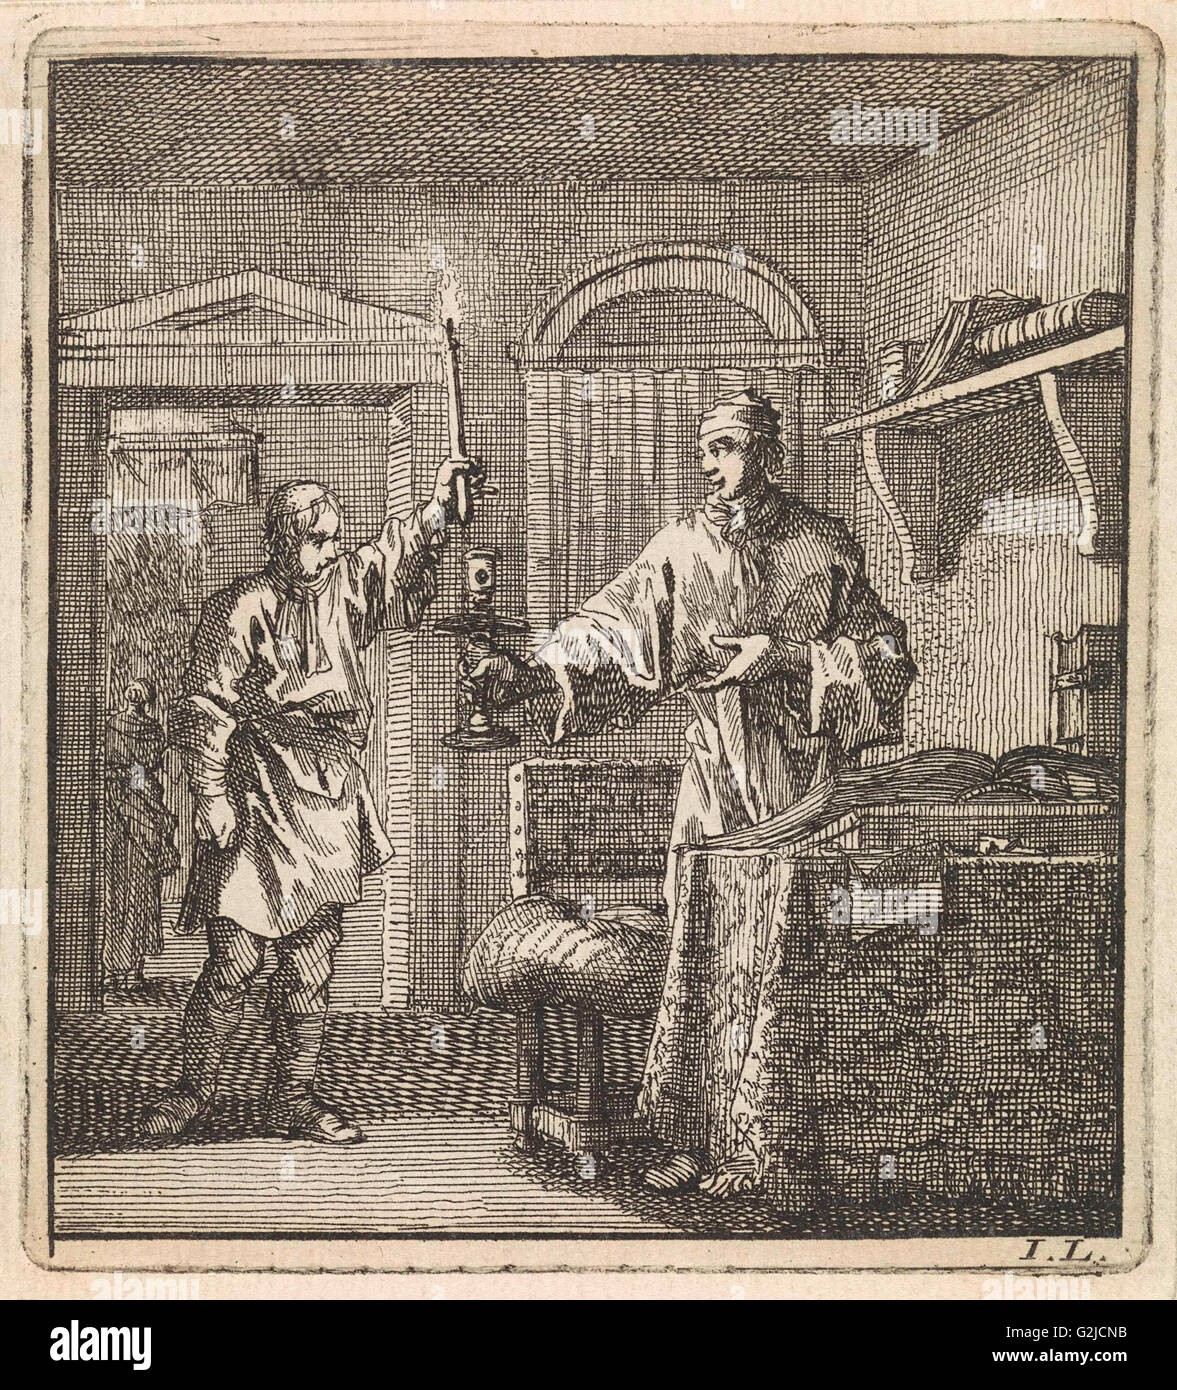 L'homme accorde une bougie allumée dans le chandelier, Jan Luyken, mer. Pieter Arentsz, Cornelis van der Sys II, 1711 Banque D'Images